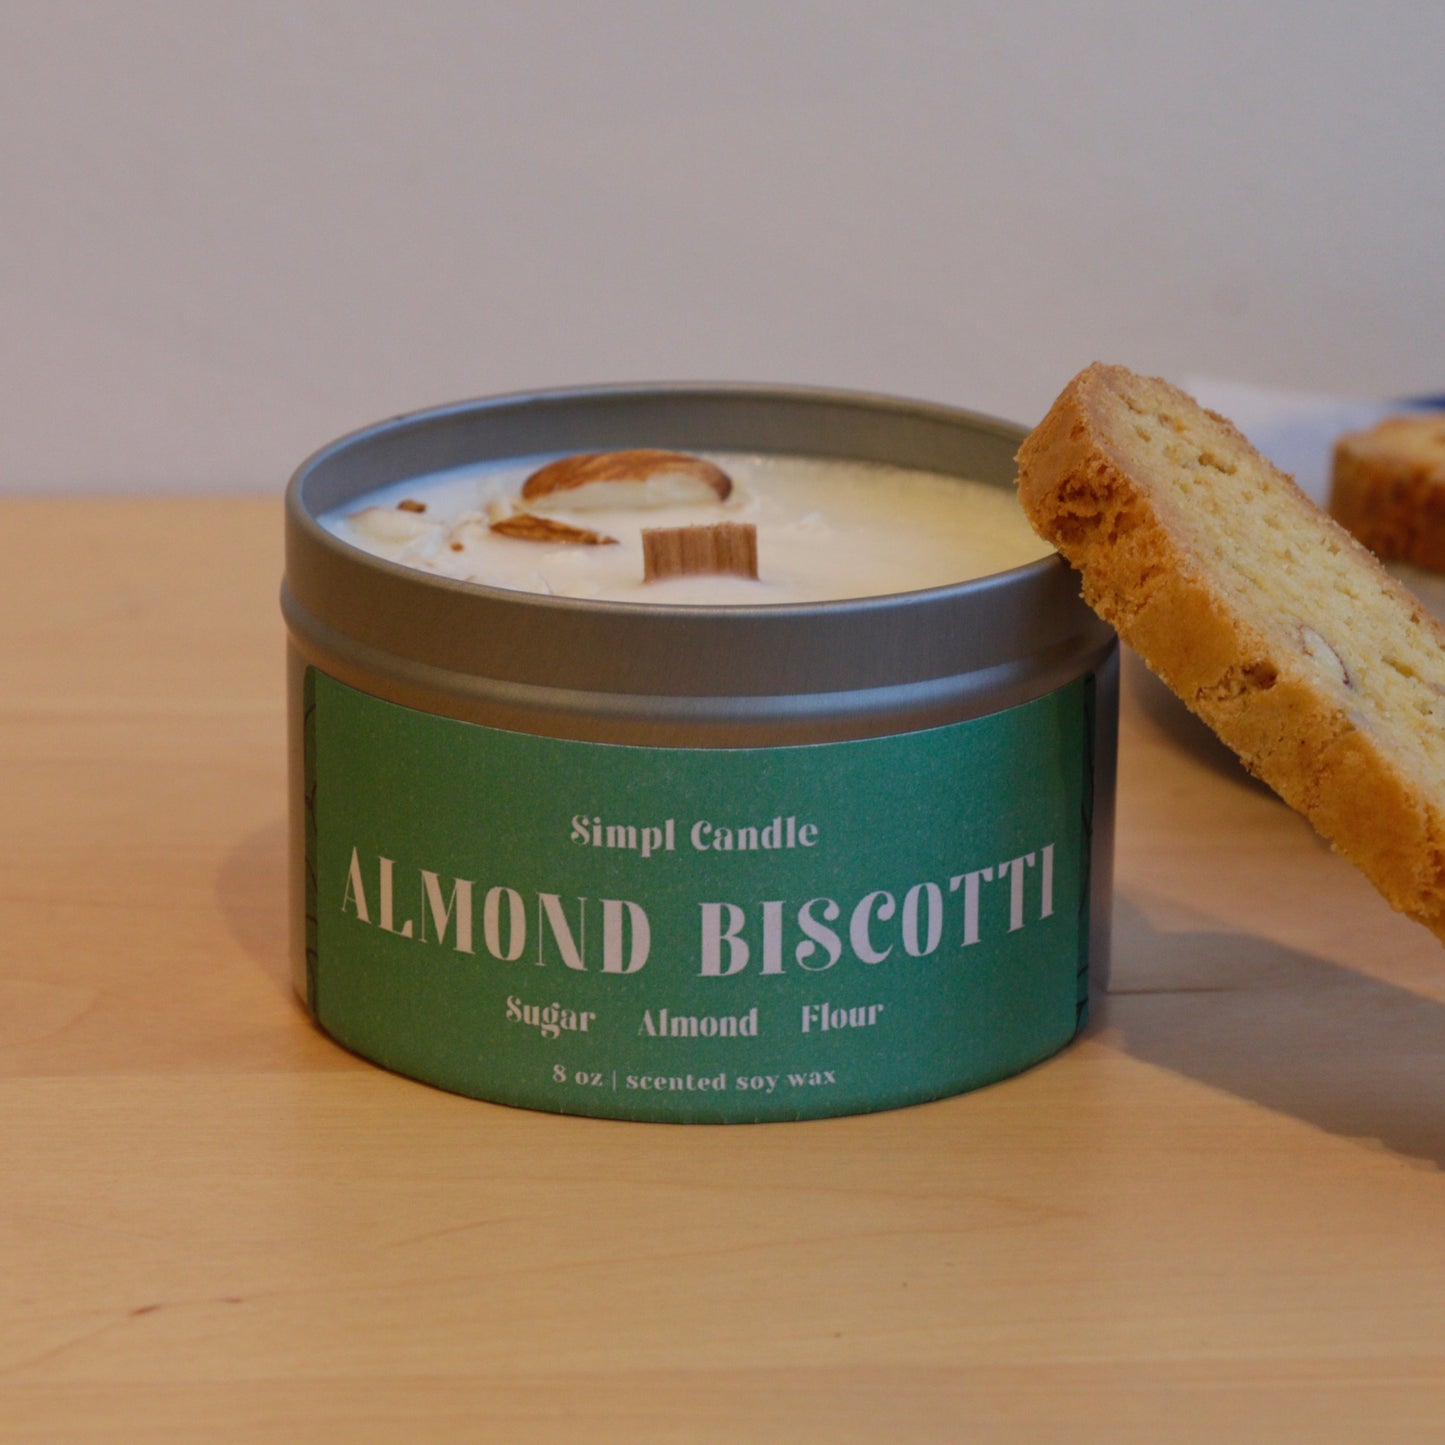 Almond Biscotti | Sugar + Almond + Flour